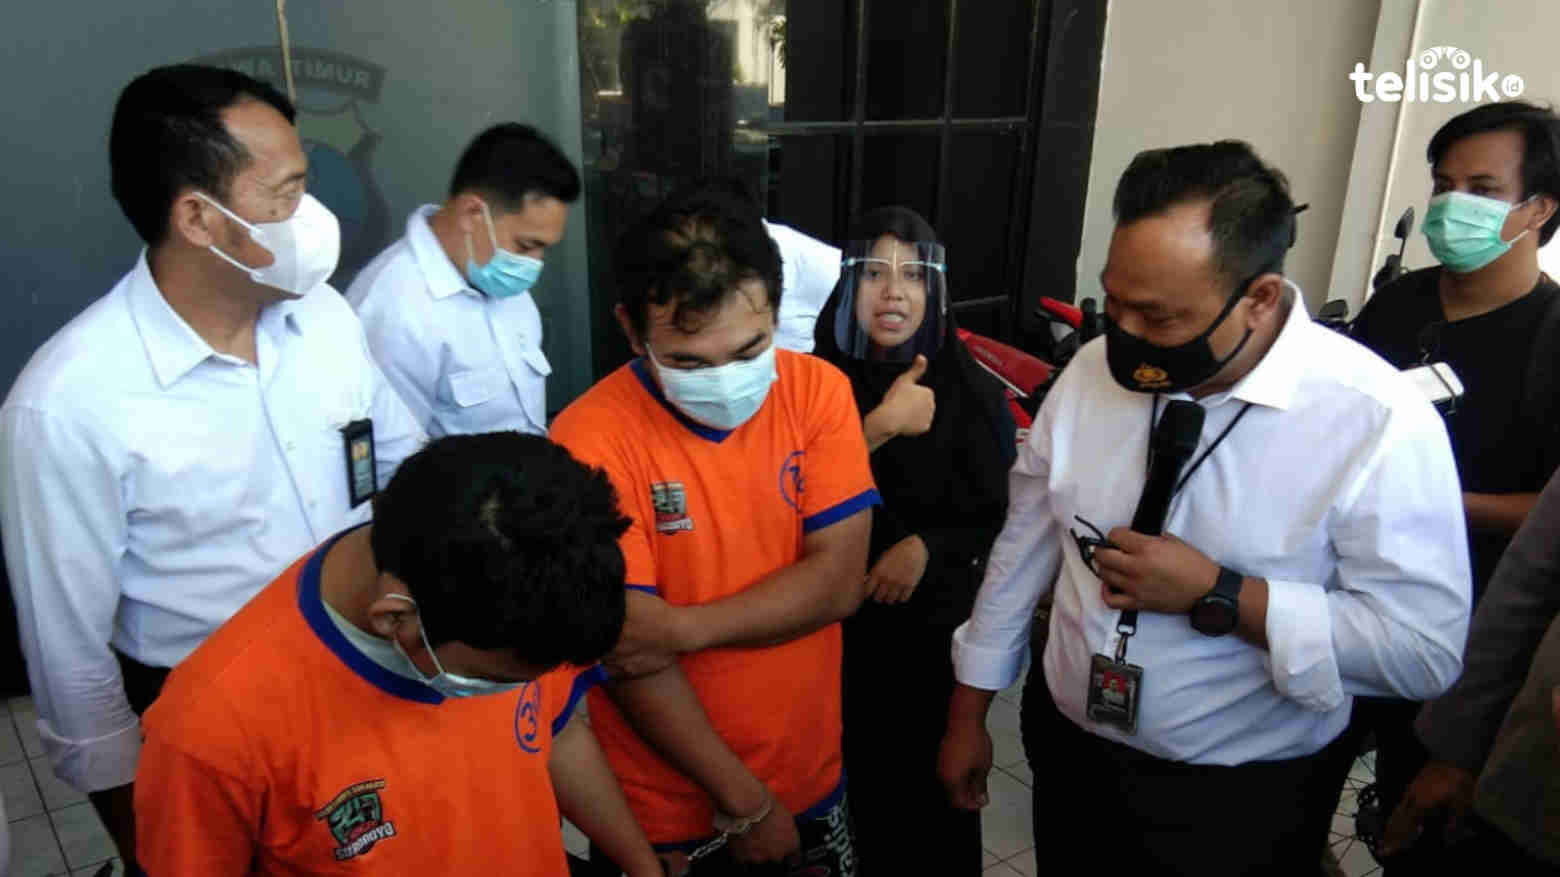 Edarkan 10 Paket Sabu, Dua Pengedar di Surabaya Terancam Hukuman Mati